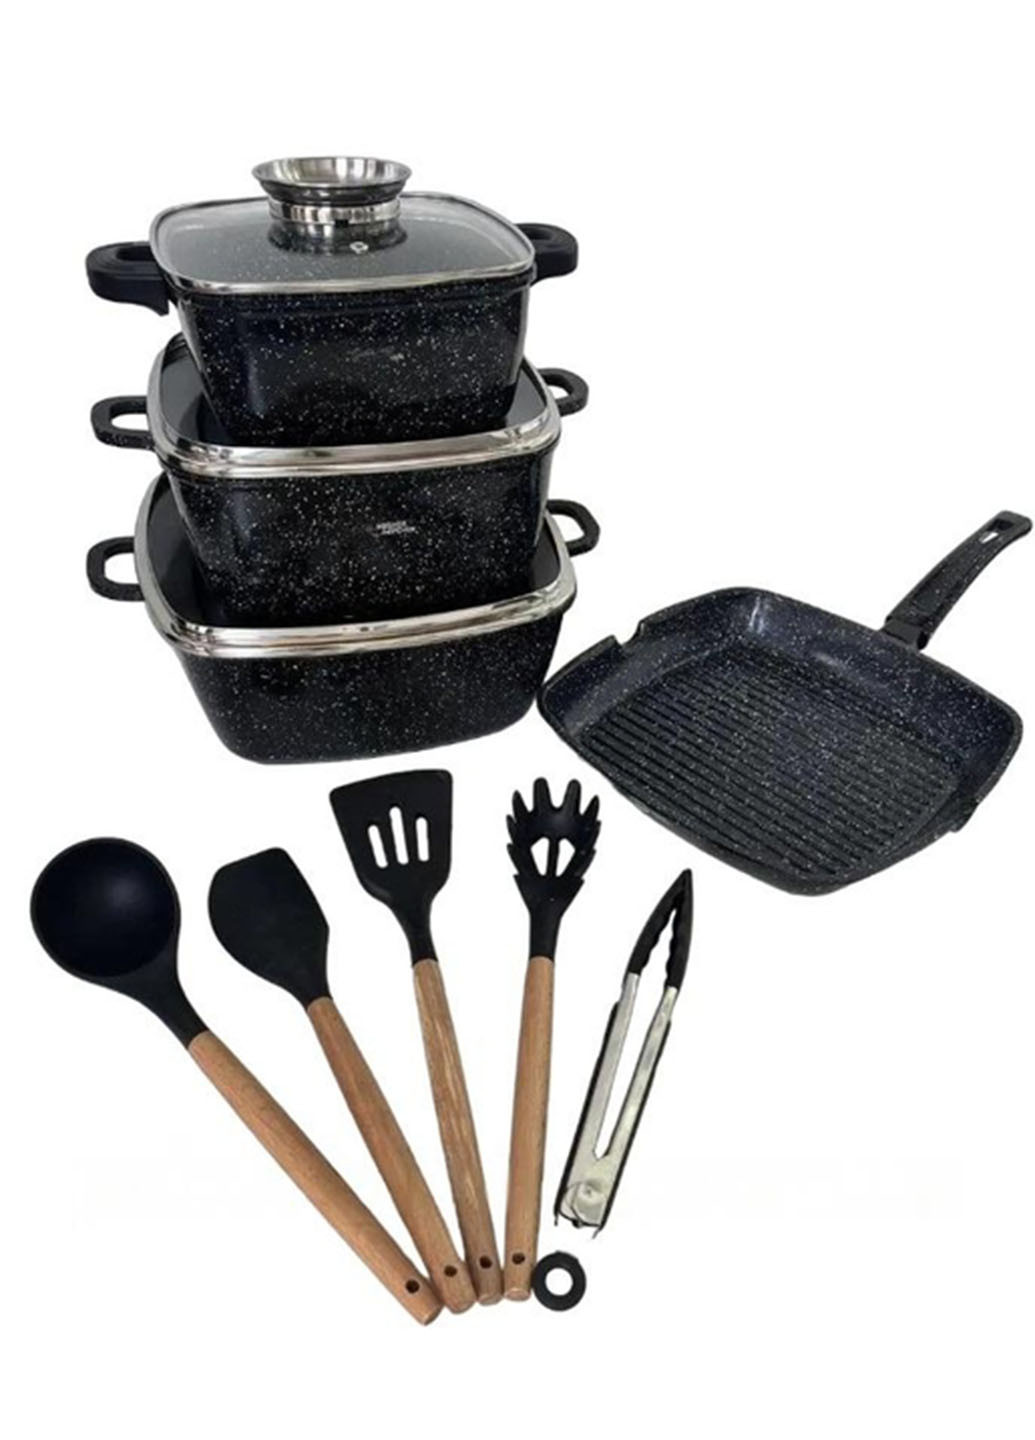 Набор посуды с гранитным антипригарным покрытием Kitchen набор кастрюль сковорода и кухонные принадлежности 14 предметов Good Idea hk-317 (277167438)